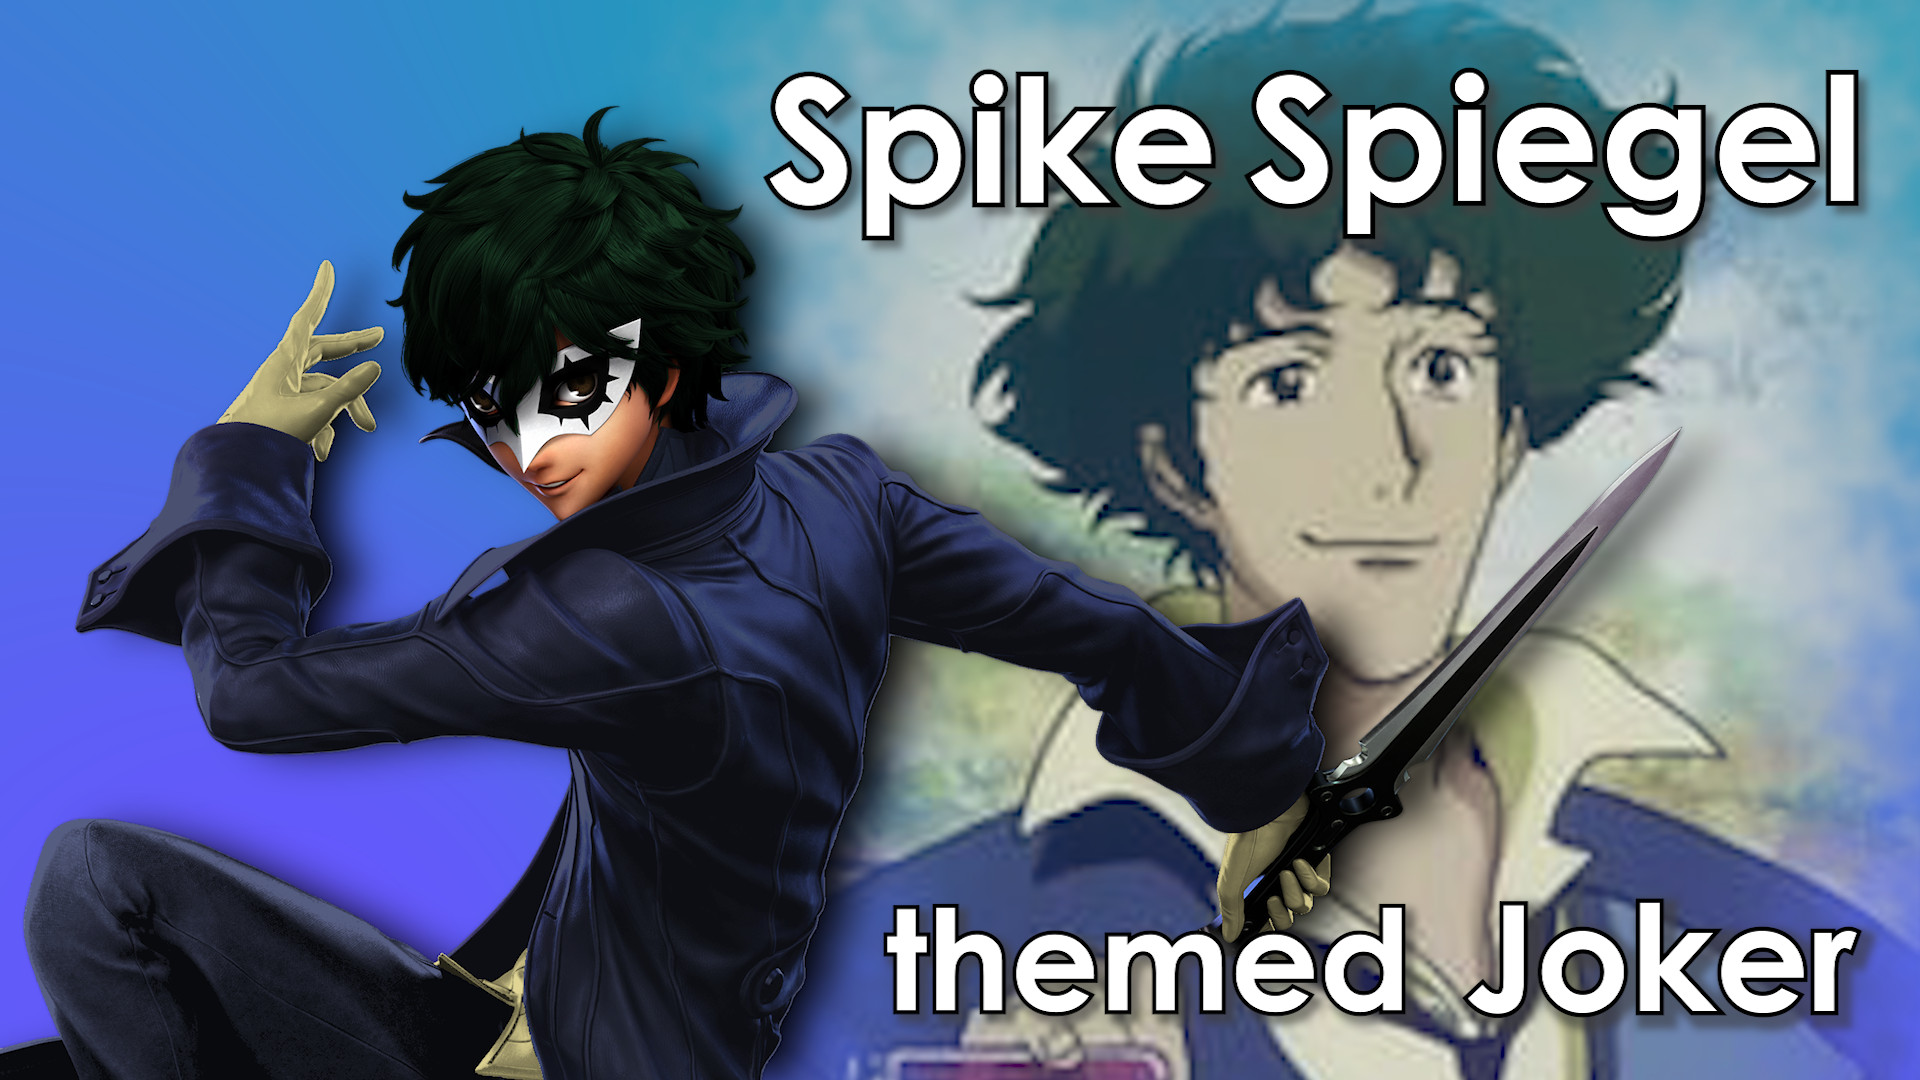 Spike Spiegel themed Joker [Super Smash Bros. Ultimate] [Mods]